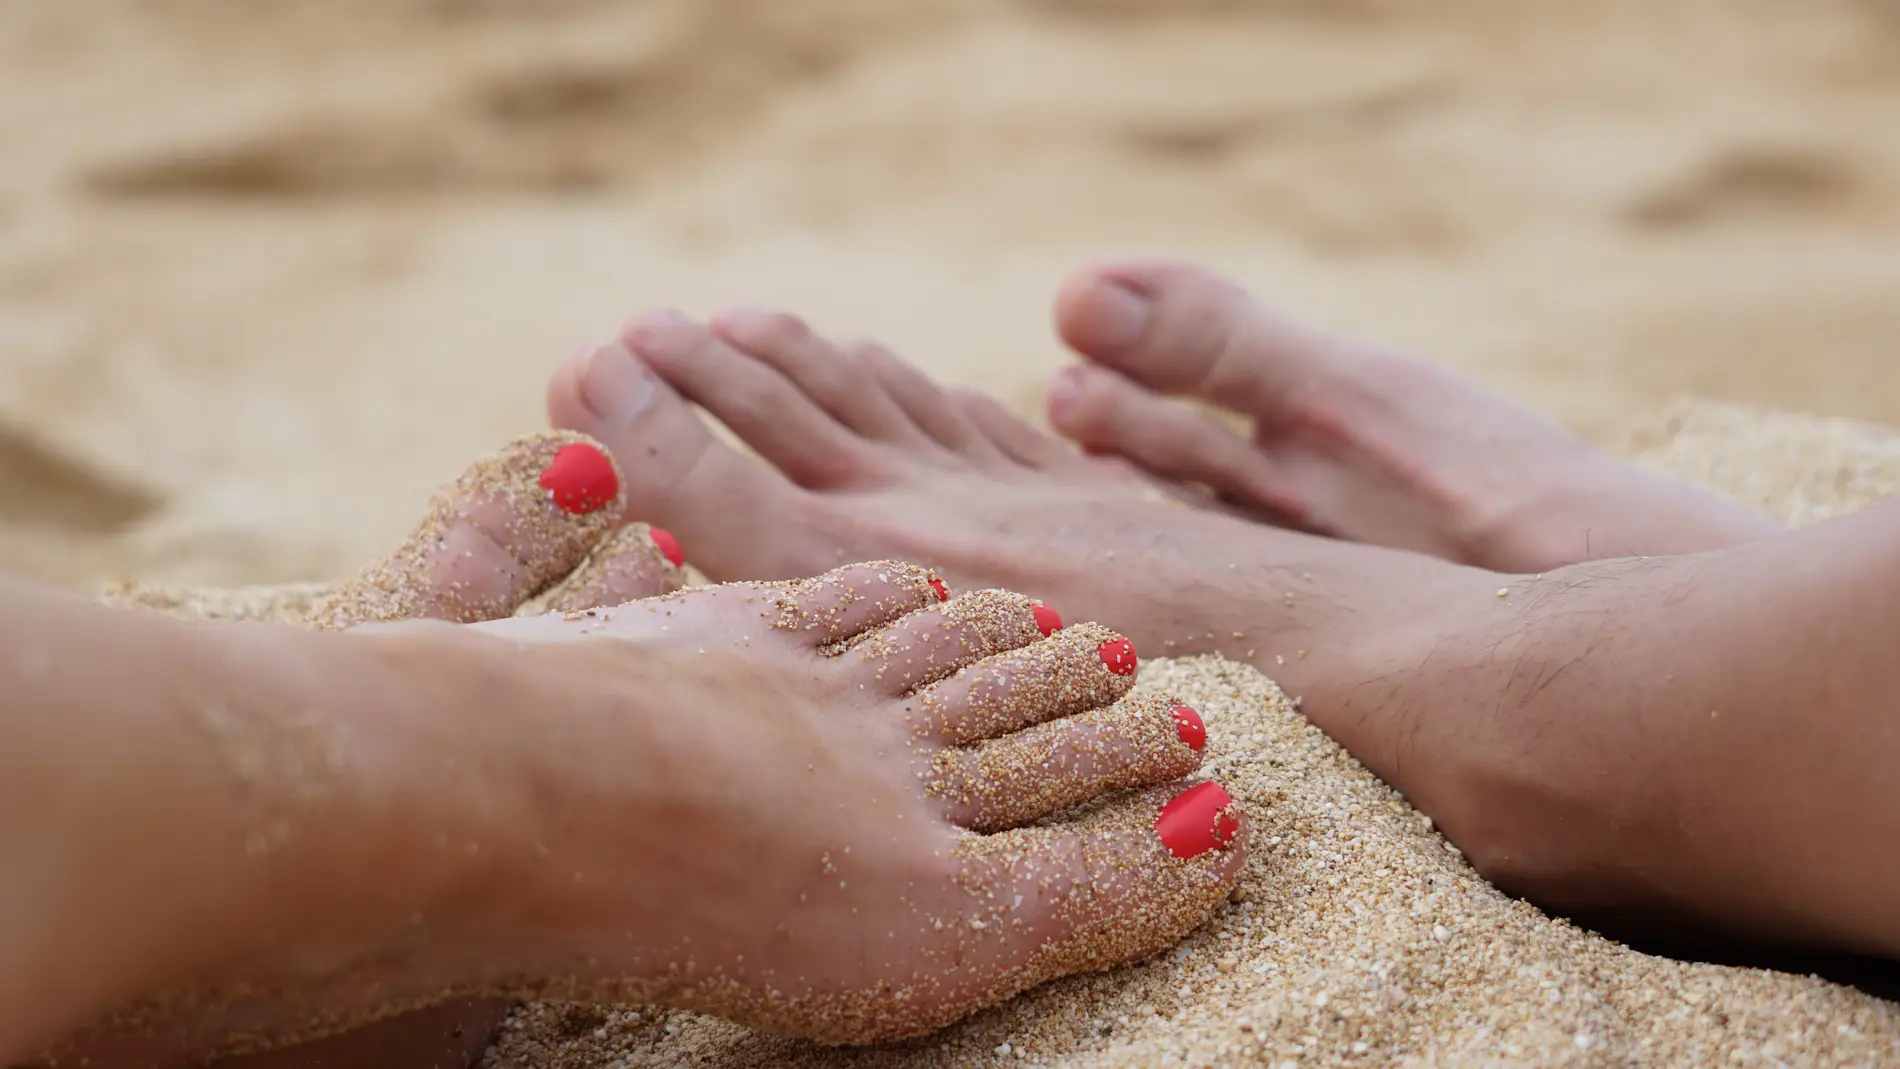 Caminar descalzo en la playa no solo implica posibles cortes y quemaduras, sino también infecciones